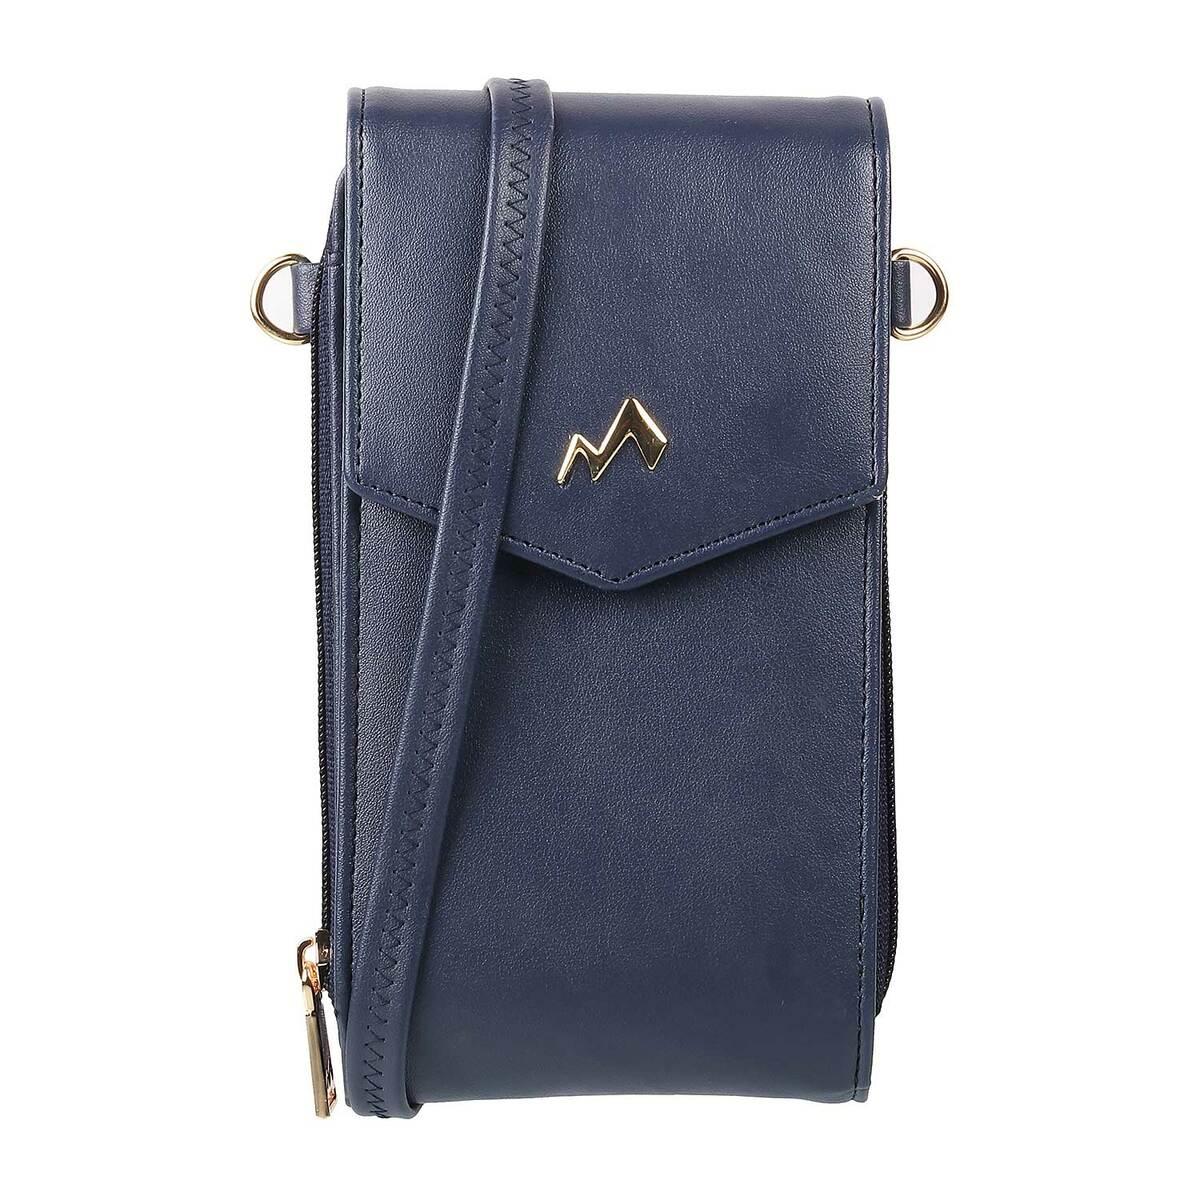 XTYLE Blue Sling Bag Women's mobile phone carry holder sling bag Light Blue  - Price in India | Flipkart.com